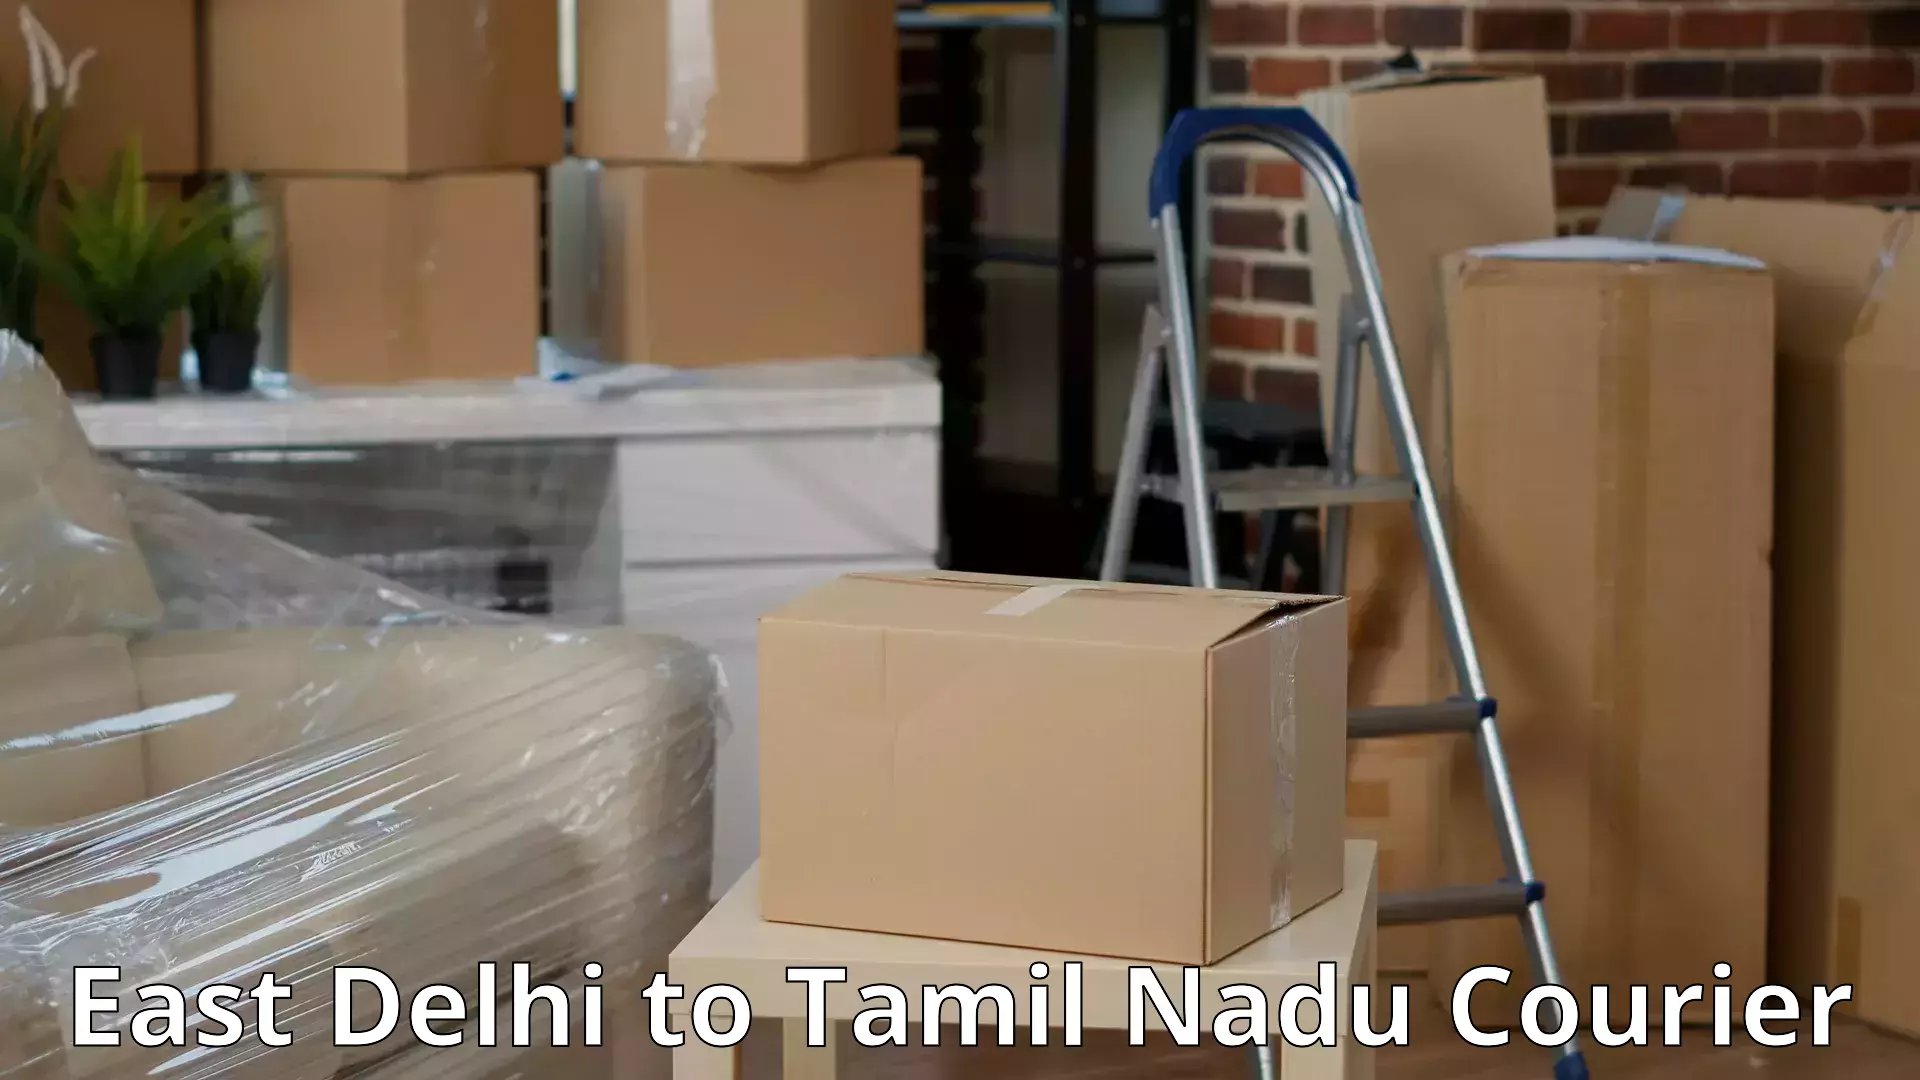 Flexible moving solutions East Delhi to Chennai